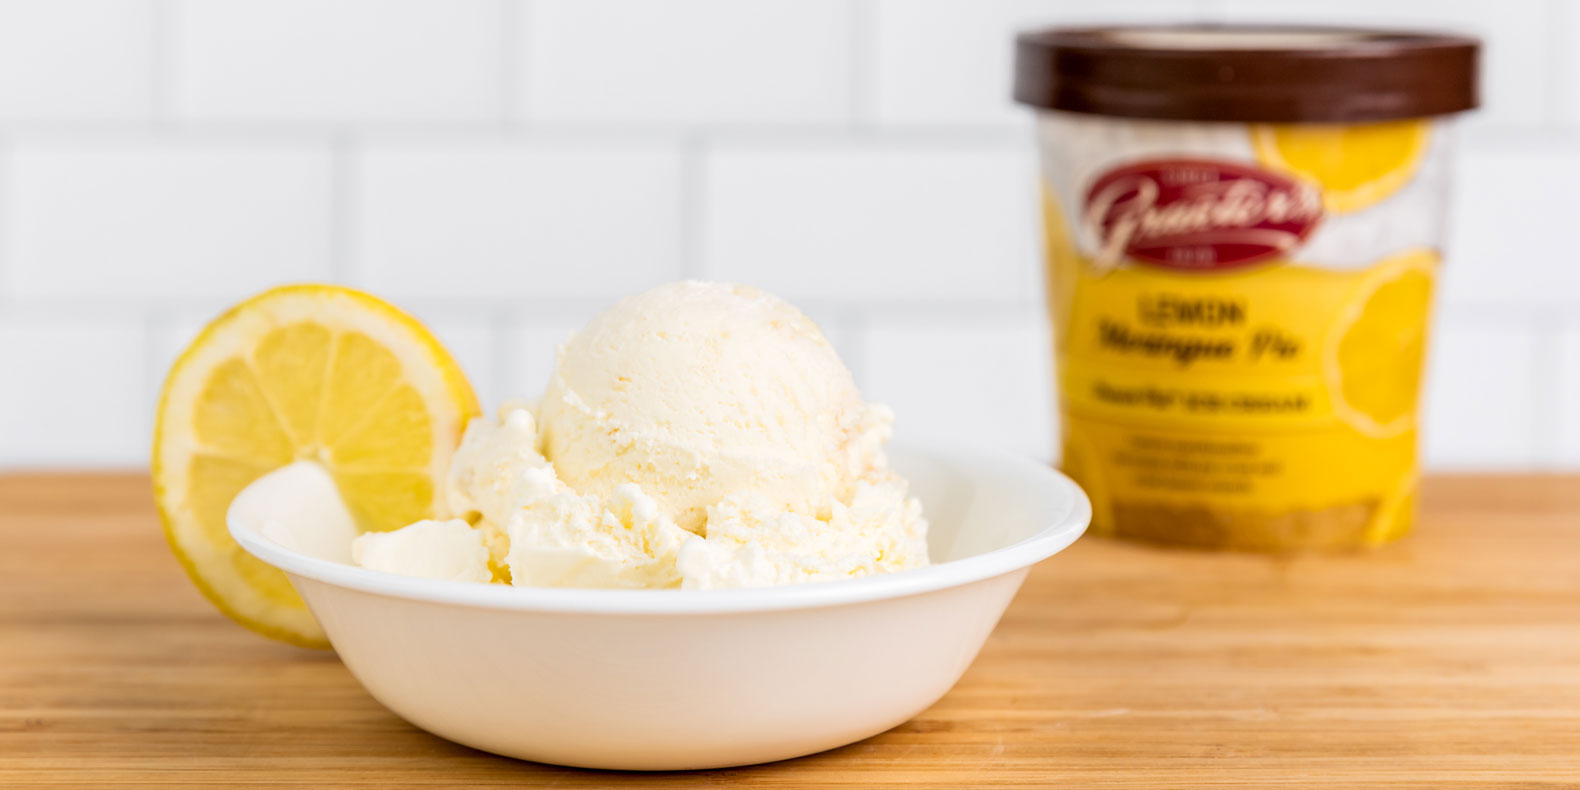 Graeter's Lemon Meringue Pie Ice Cream Released March 1st